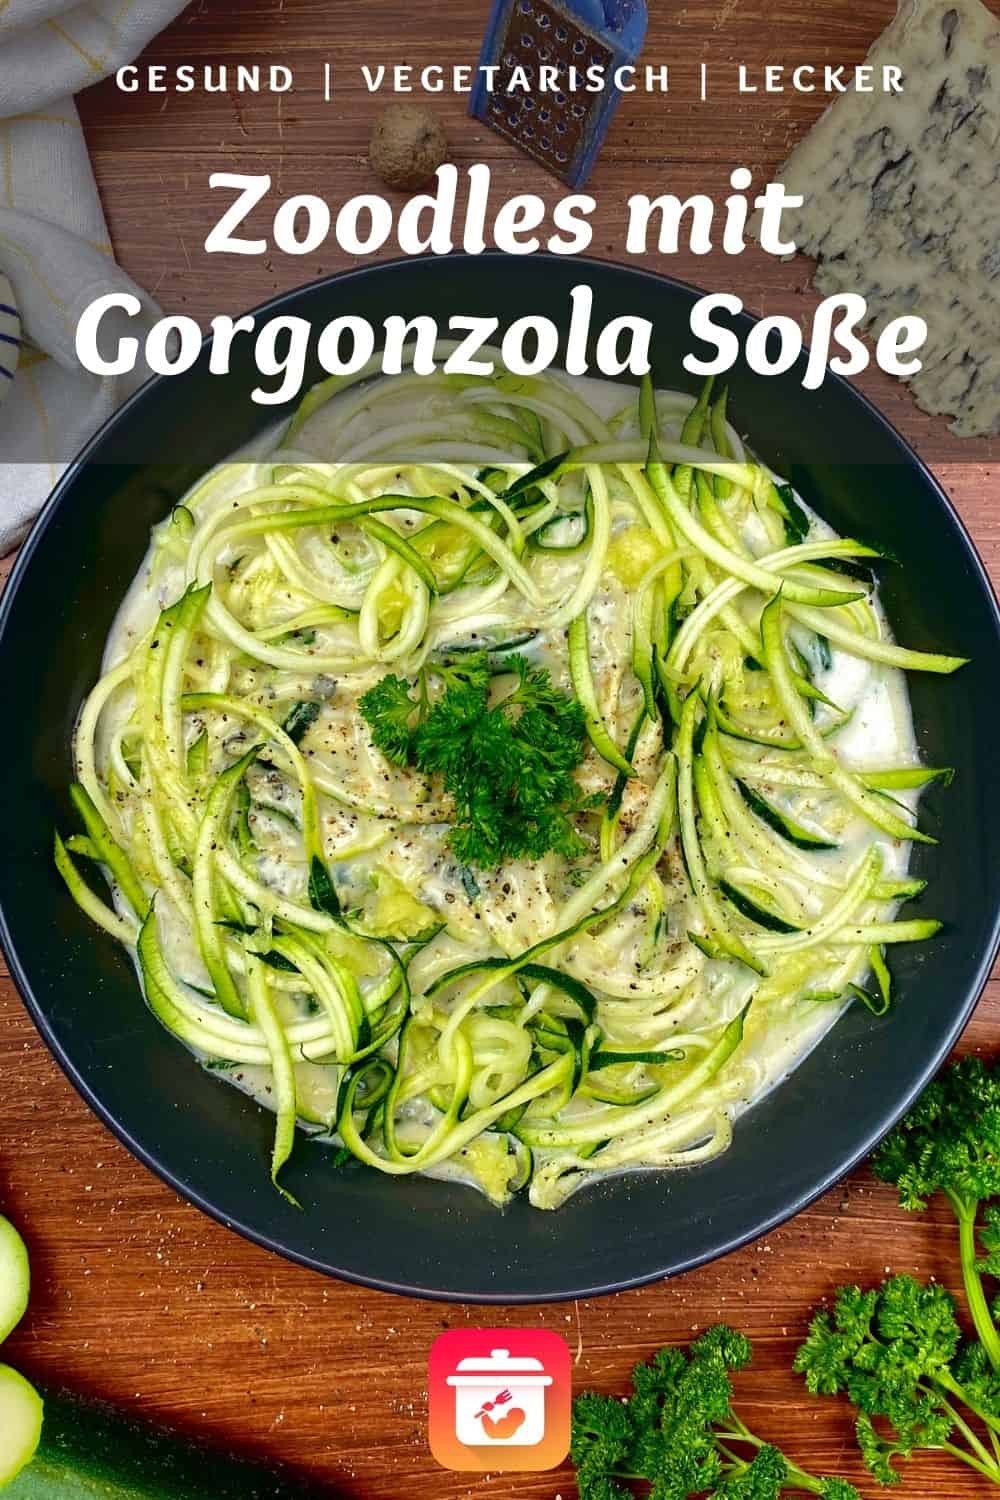 Zoodles mit Gorgonzola Soße - Zucchini Spaghetti mit Gorgonzola